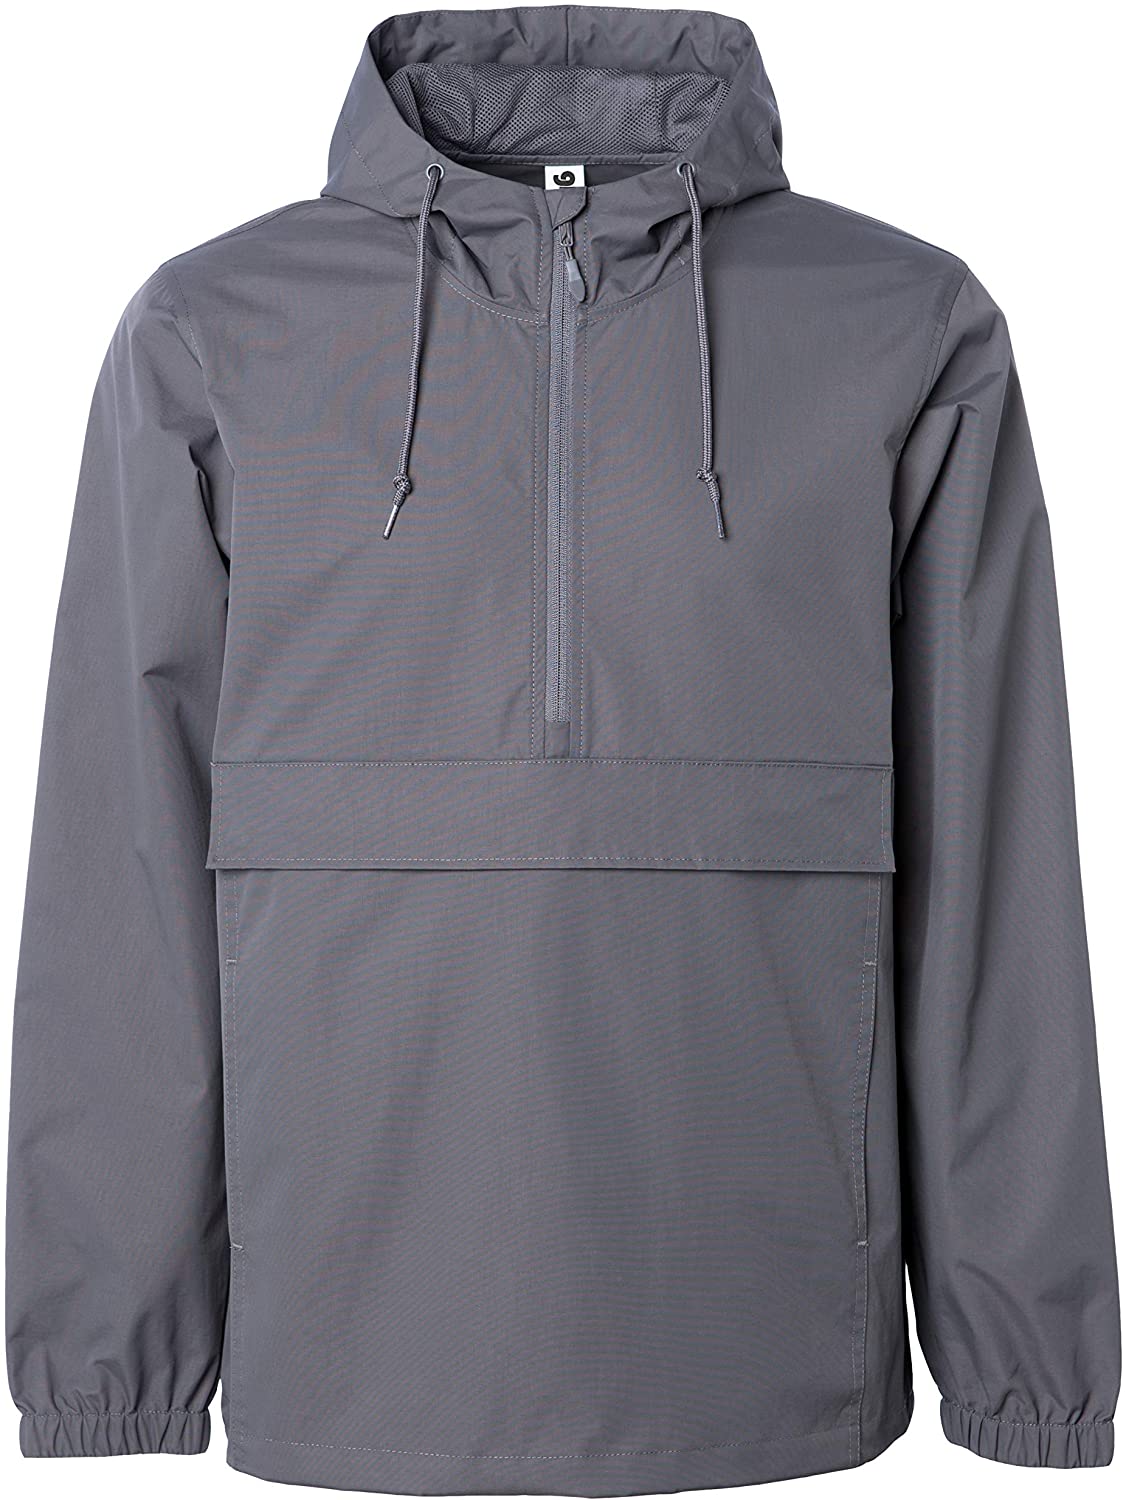 Global Blank Men/’s Hooded Raincoat Waterproof Jacket Zip Up Windbreaker Anorak